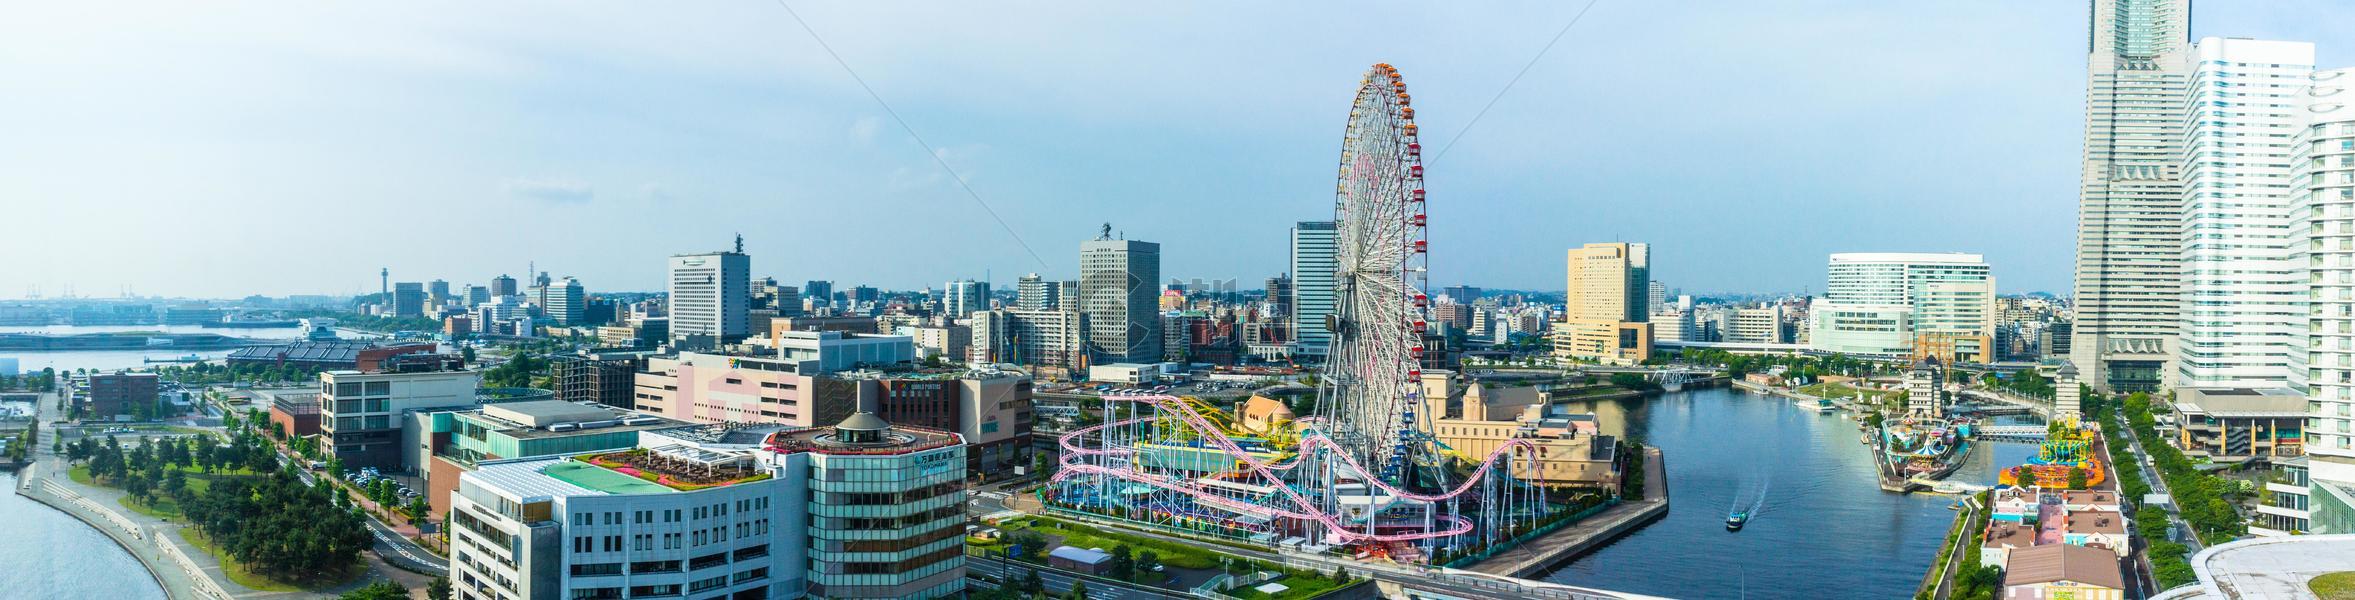 日本横滨城市景观图片素材免费下载